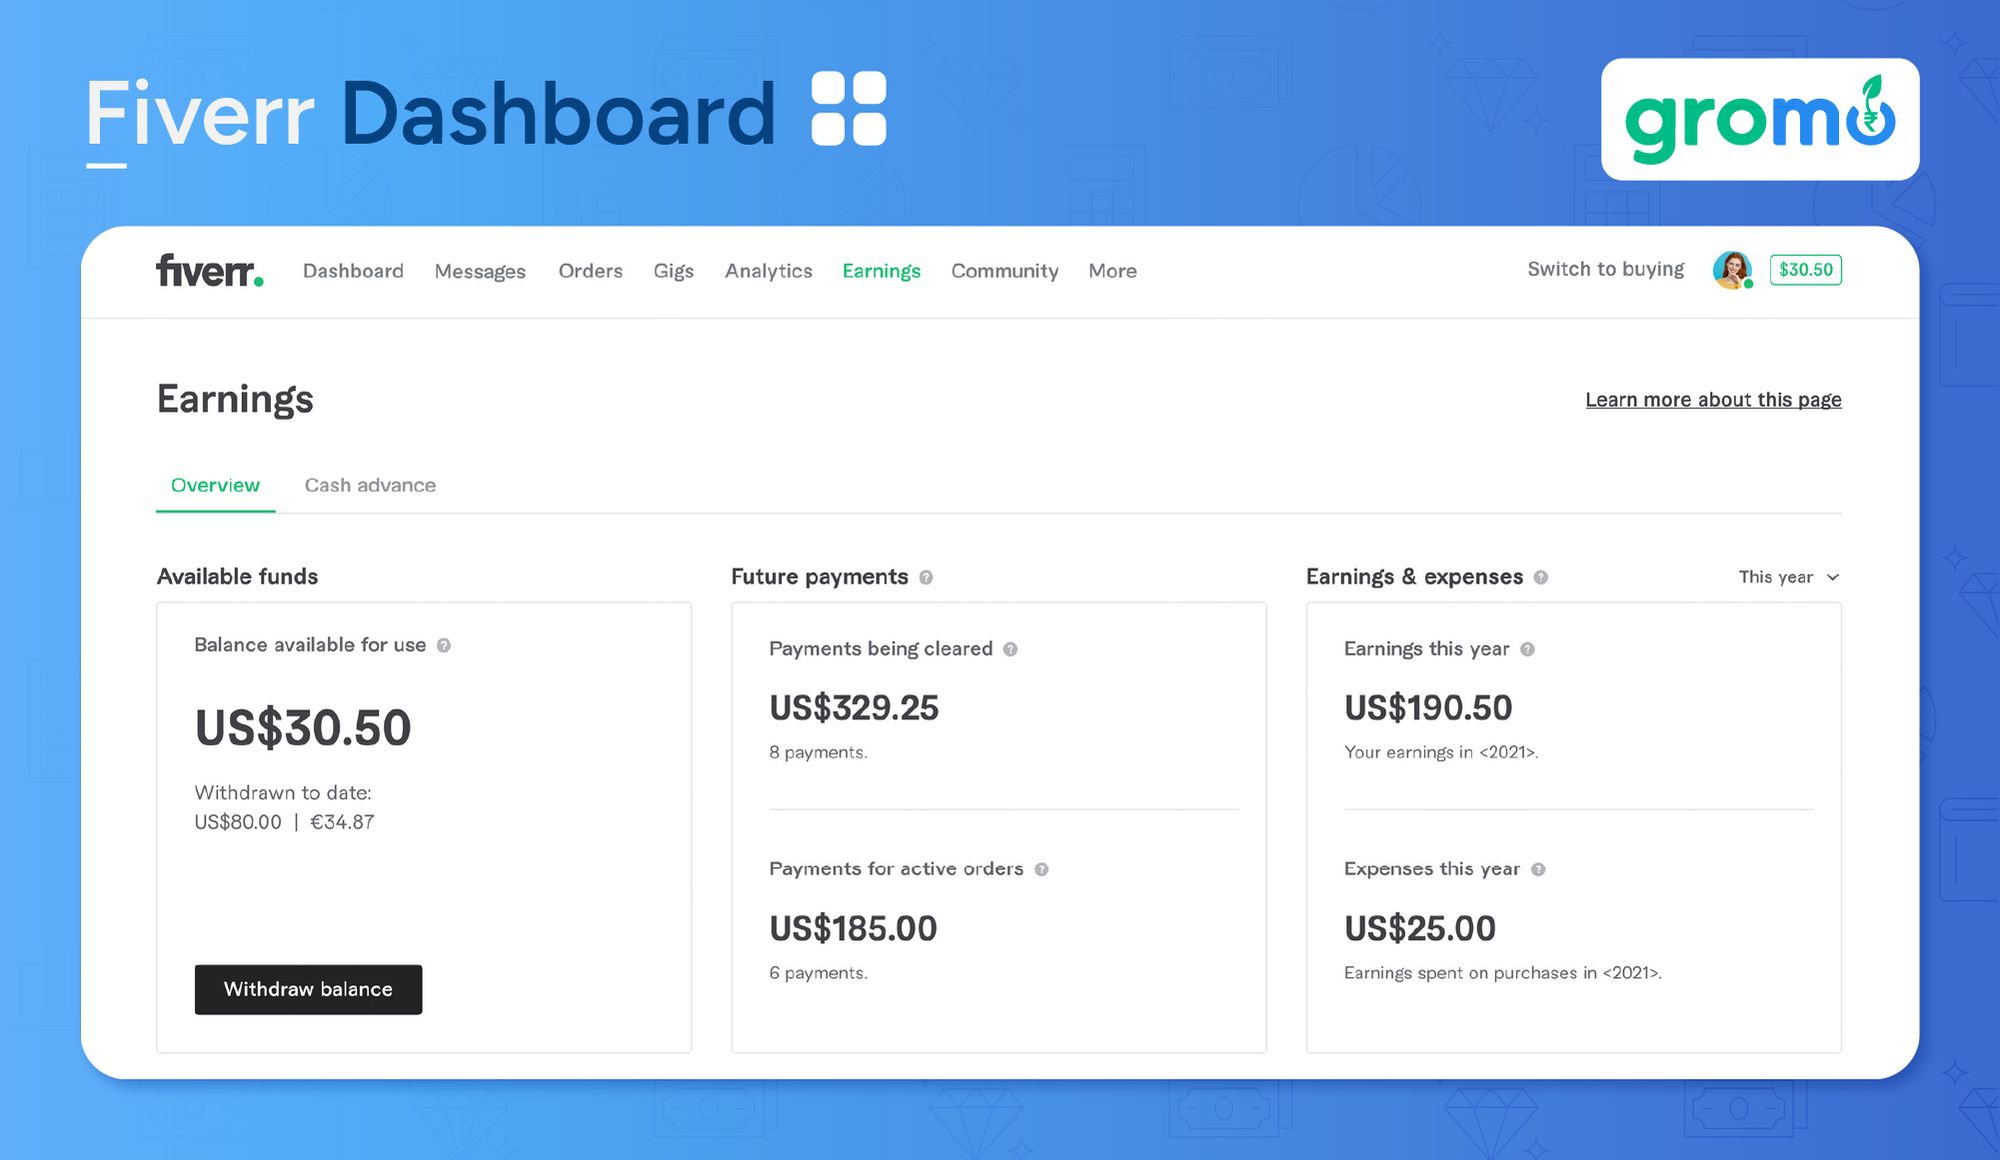 Fiverr Dashboard - Best Ways to Make Money Online - GroMo